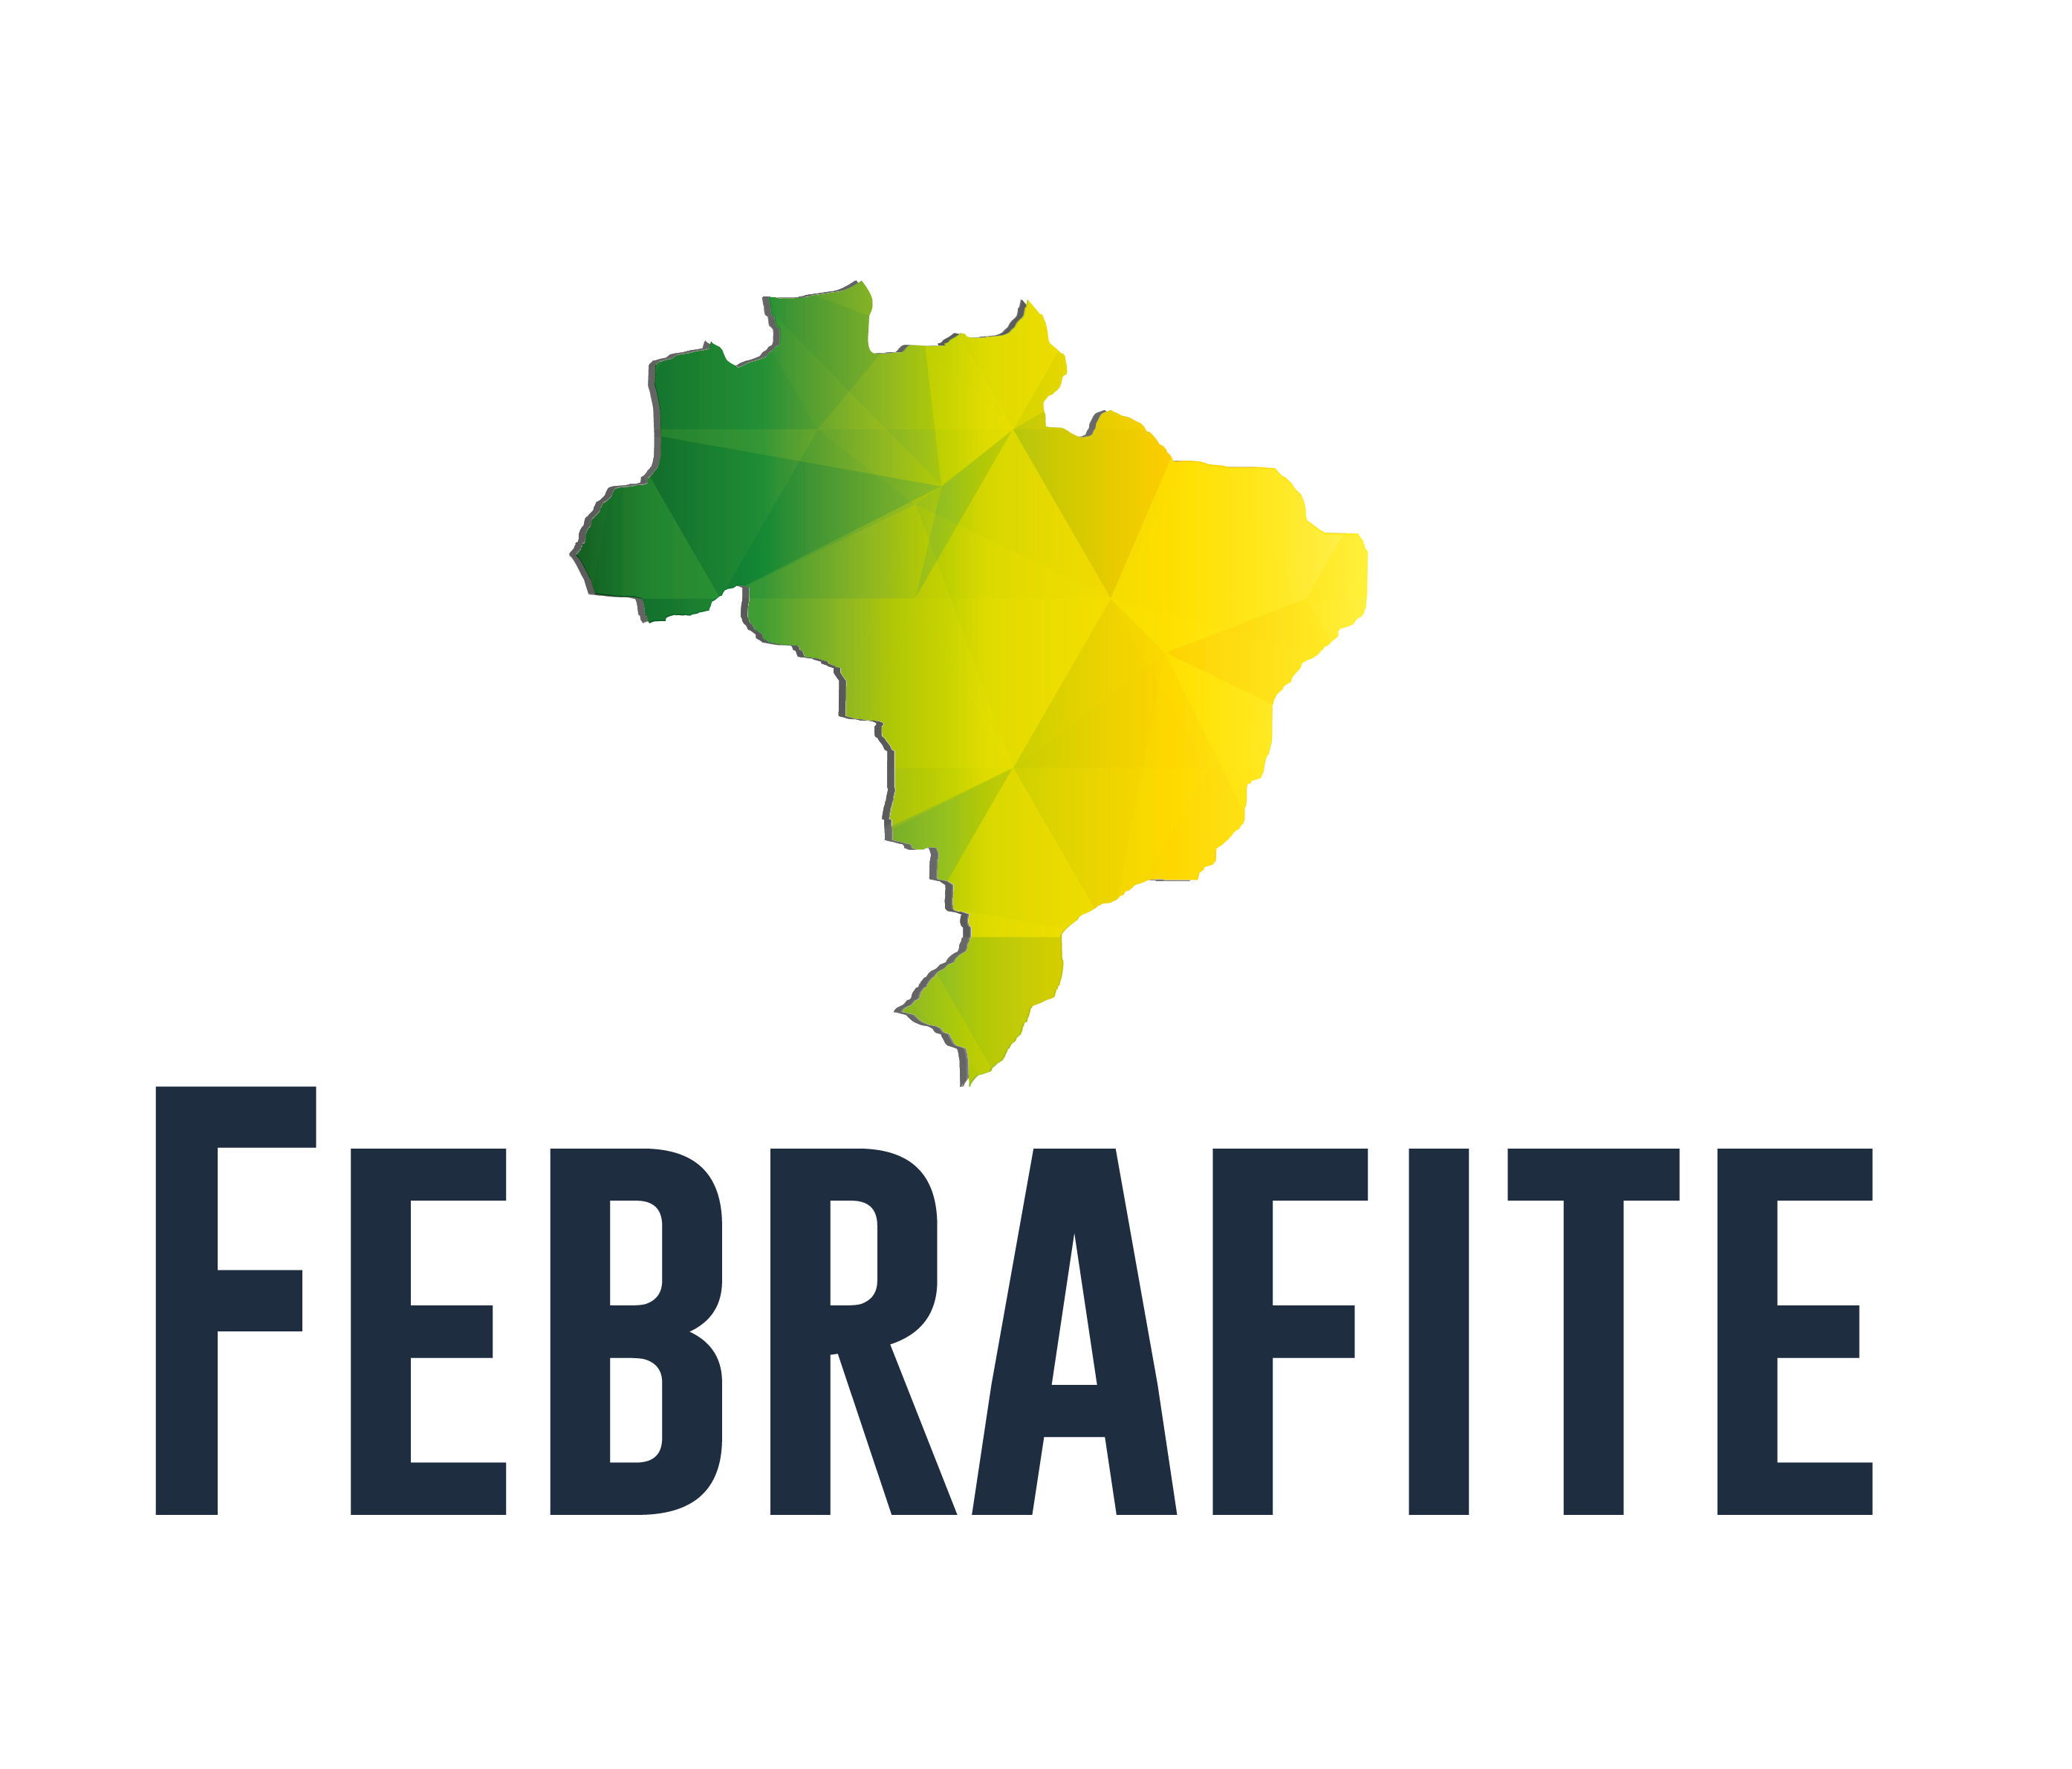 Estudo da Febrafite aponta que número de servidores no Brasil está abaixo da média da OCDE